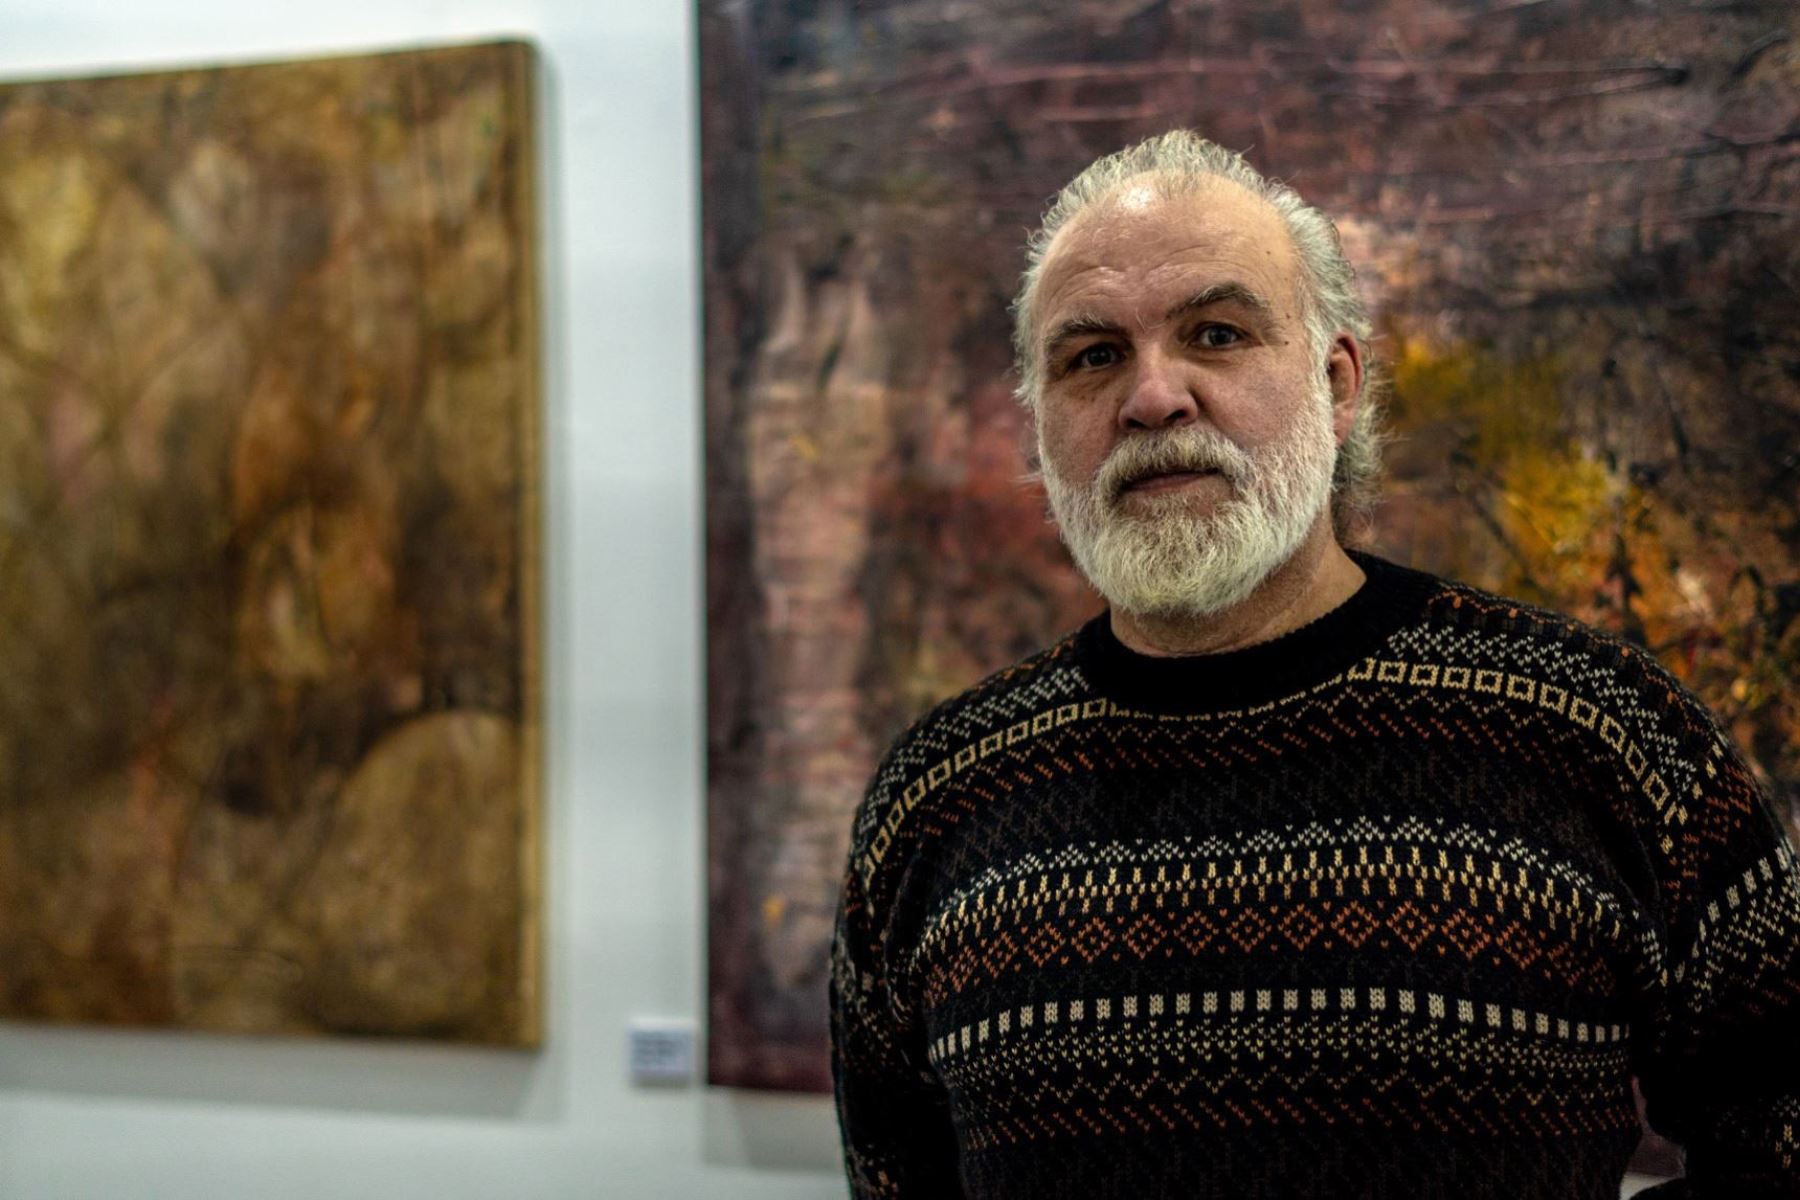 Bernardo Barreto presenta su exposición individual "Caminos".